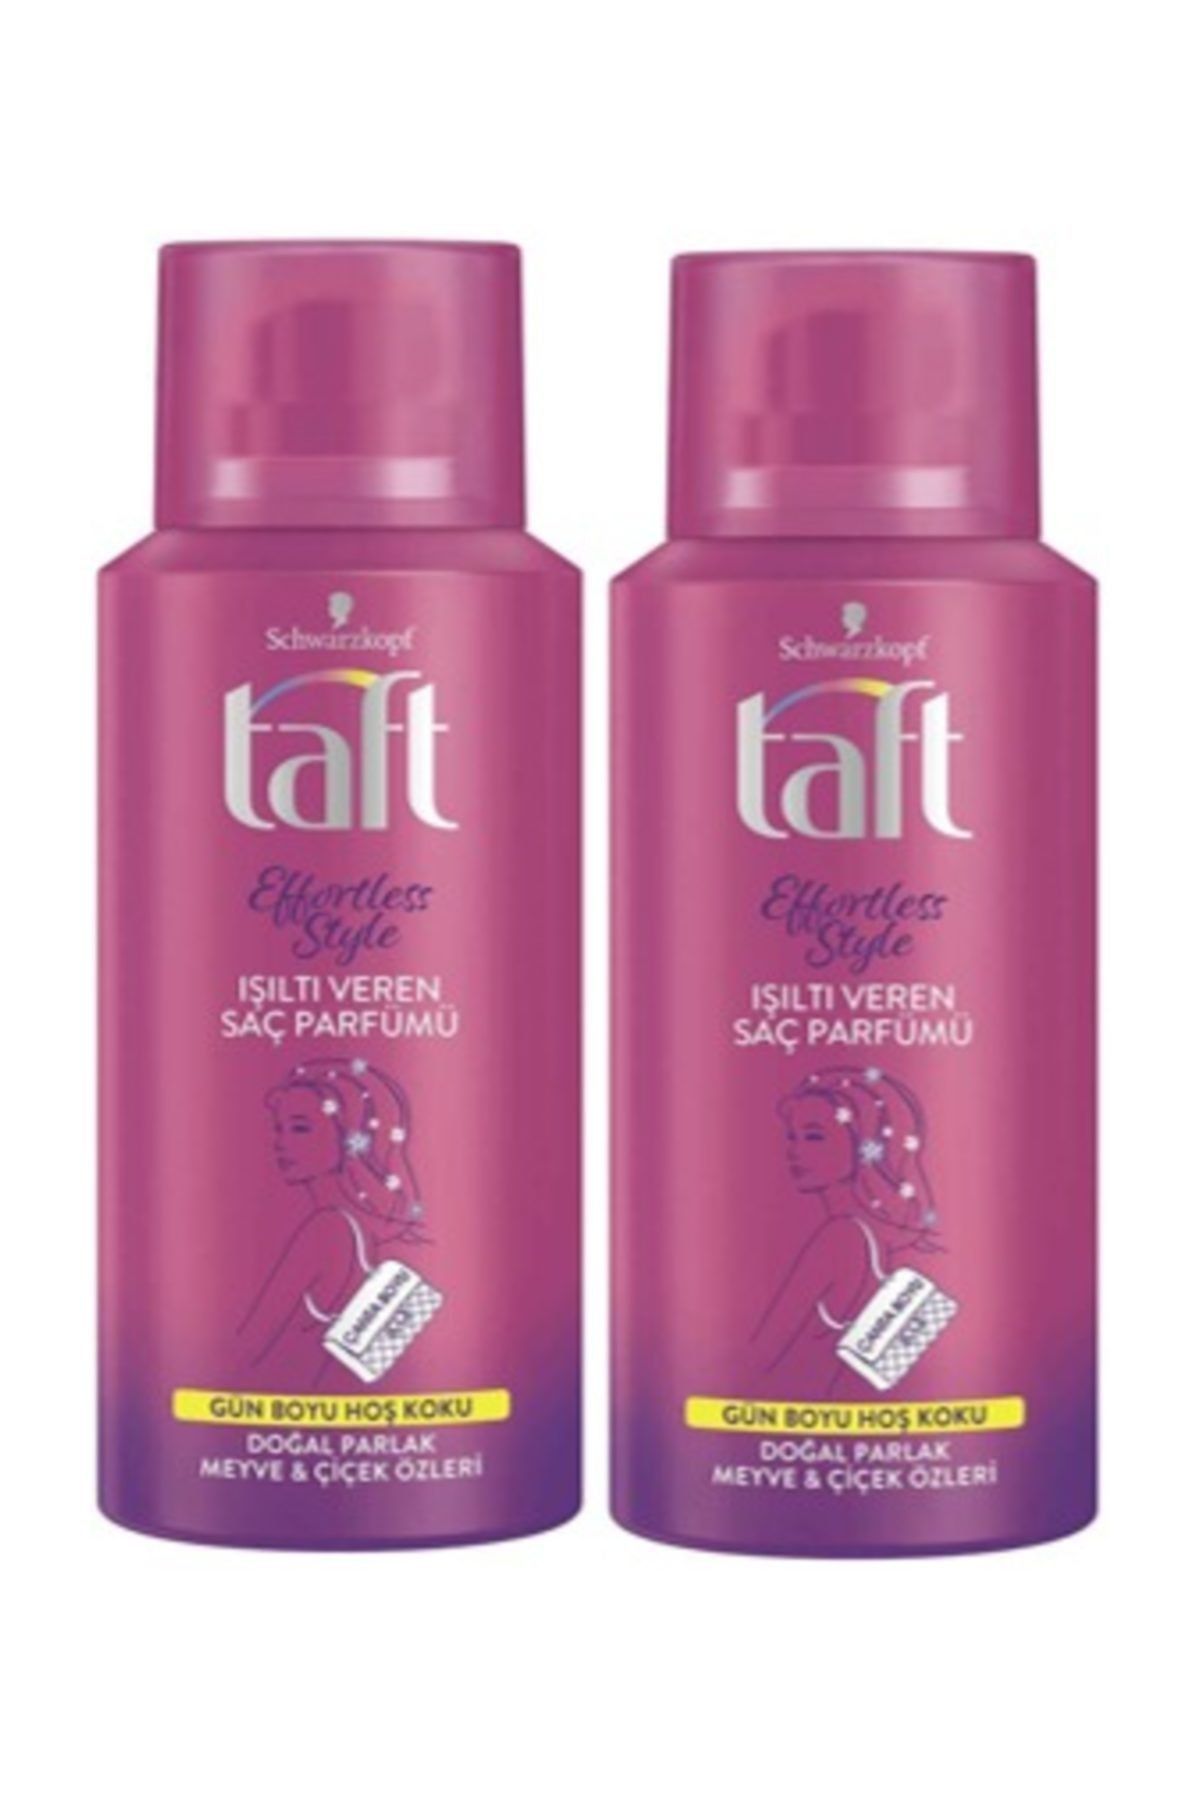 Taft Effortless Style Işıltı Veren Saç Parfümü 100 Ml X 2 Adet